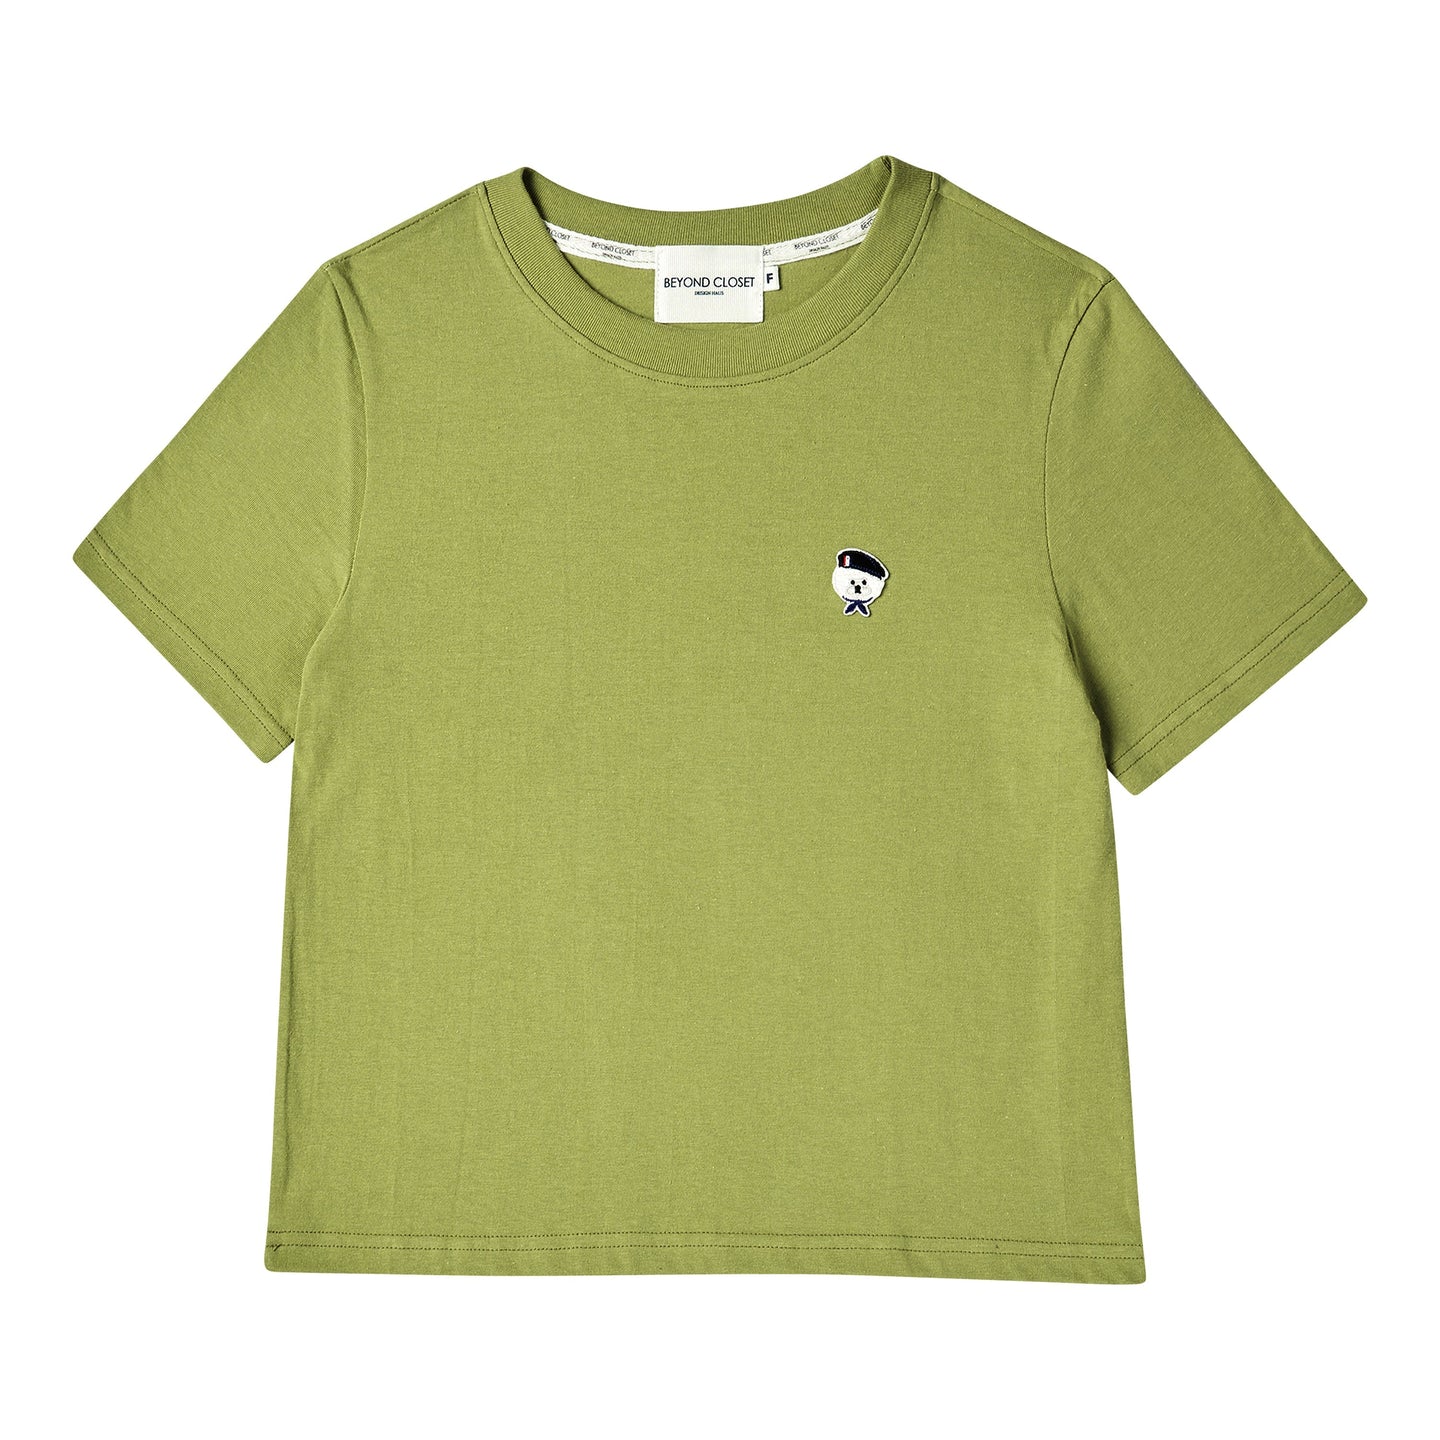 BEYOND CLOSET Women's Edition New Parisian T-Shirt Green